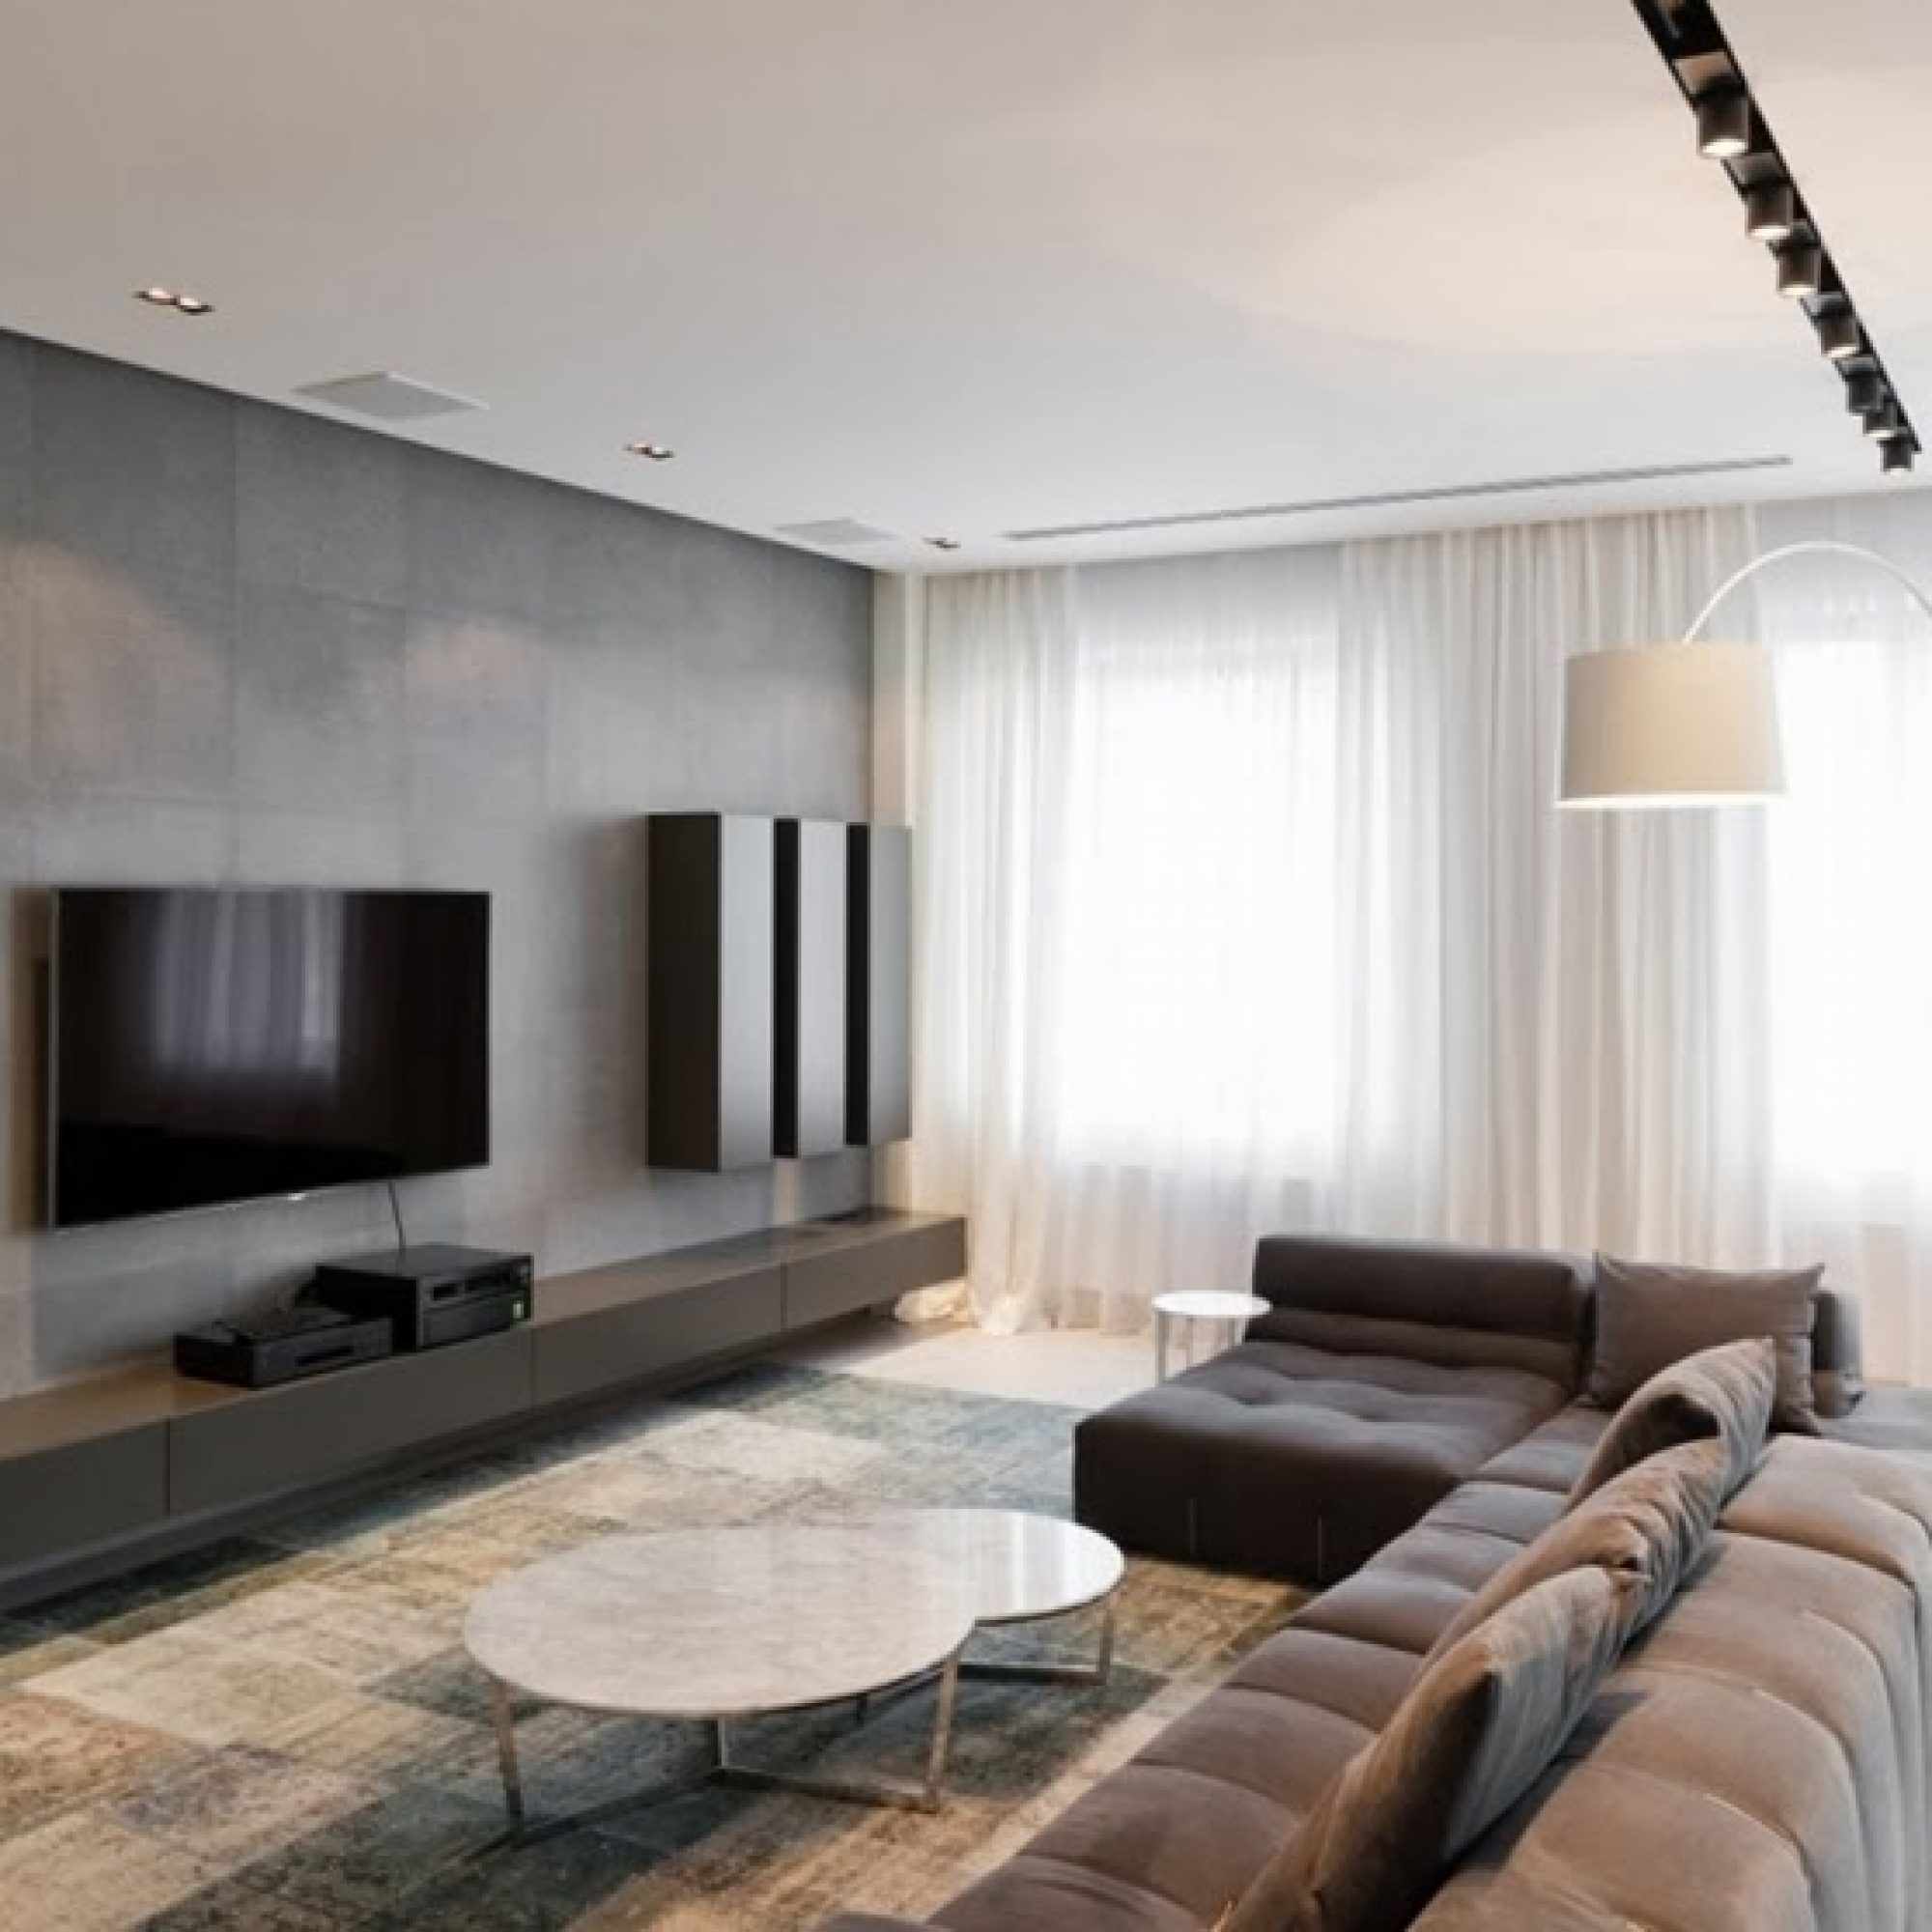 a gondolat, hogy a nappali világosságát minimalista stílusban alkalmazzák